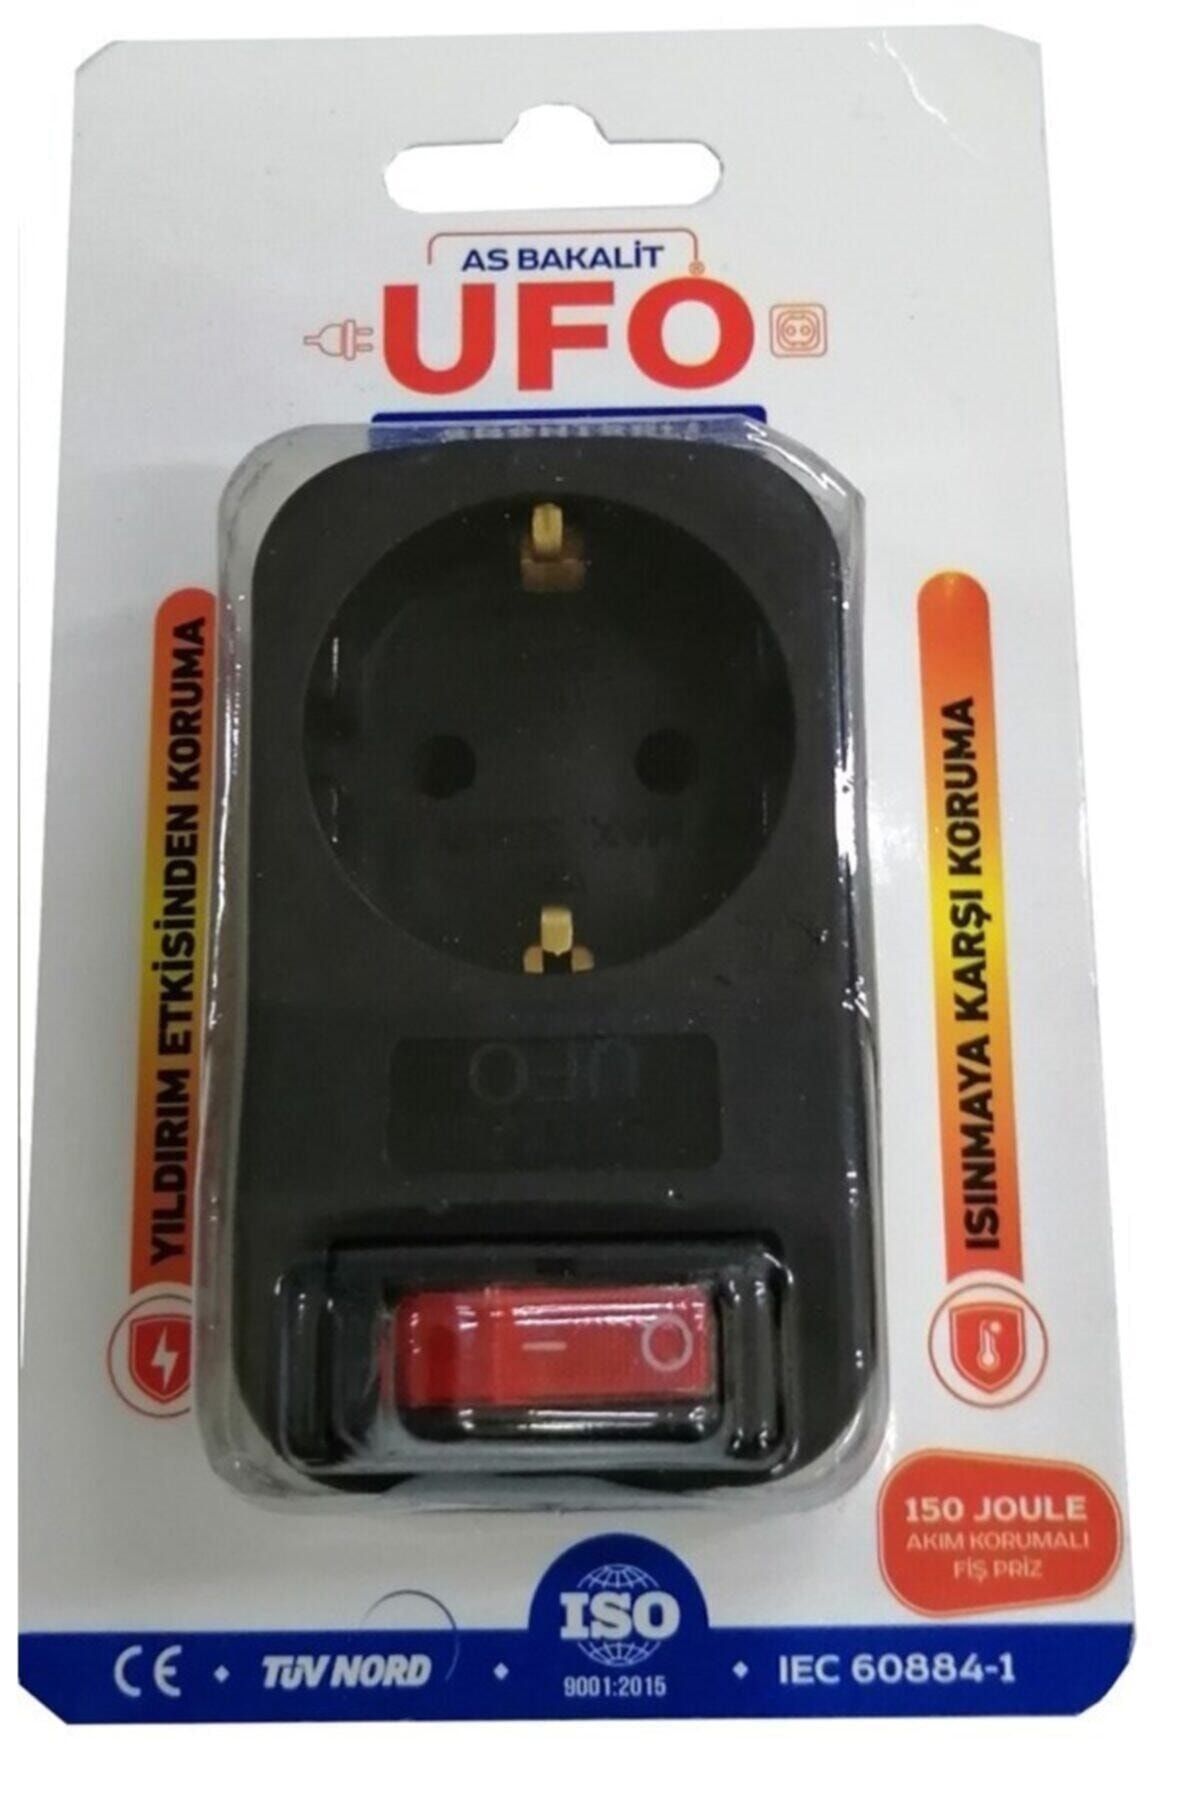 Genel Markalar Ufo Anahtarlı Tekli Akım Korumalı Fişli Priz Siyah 323027